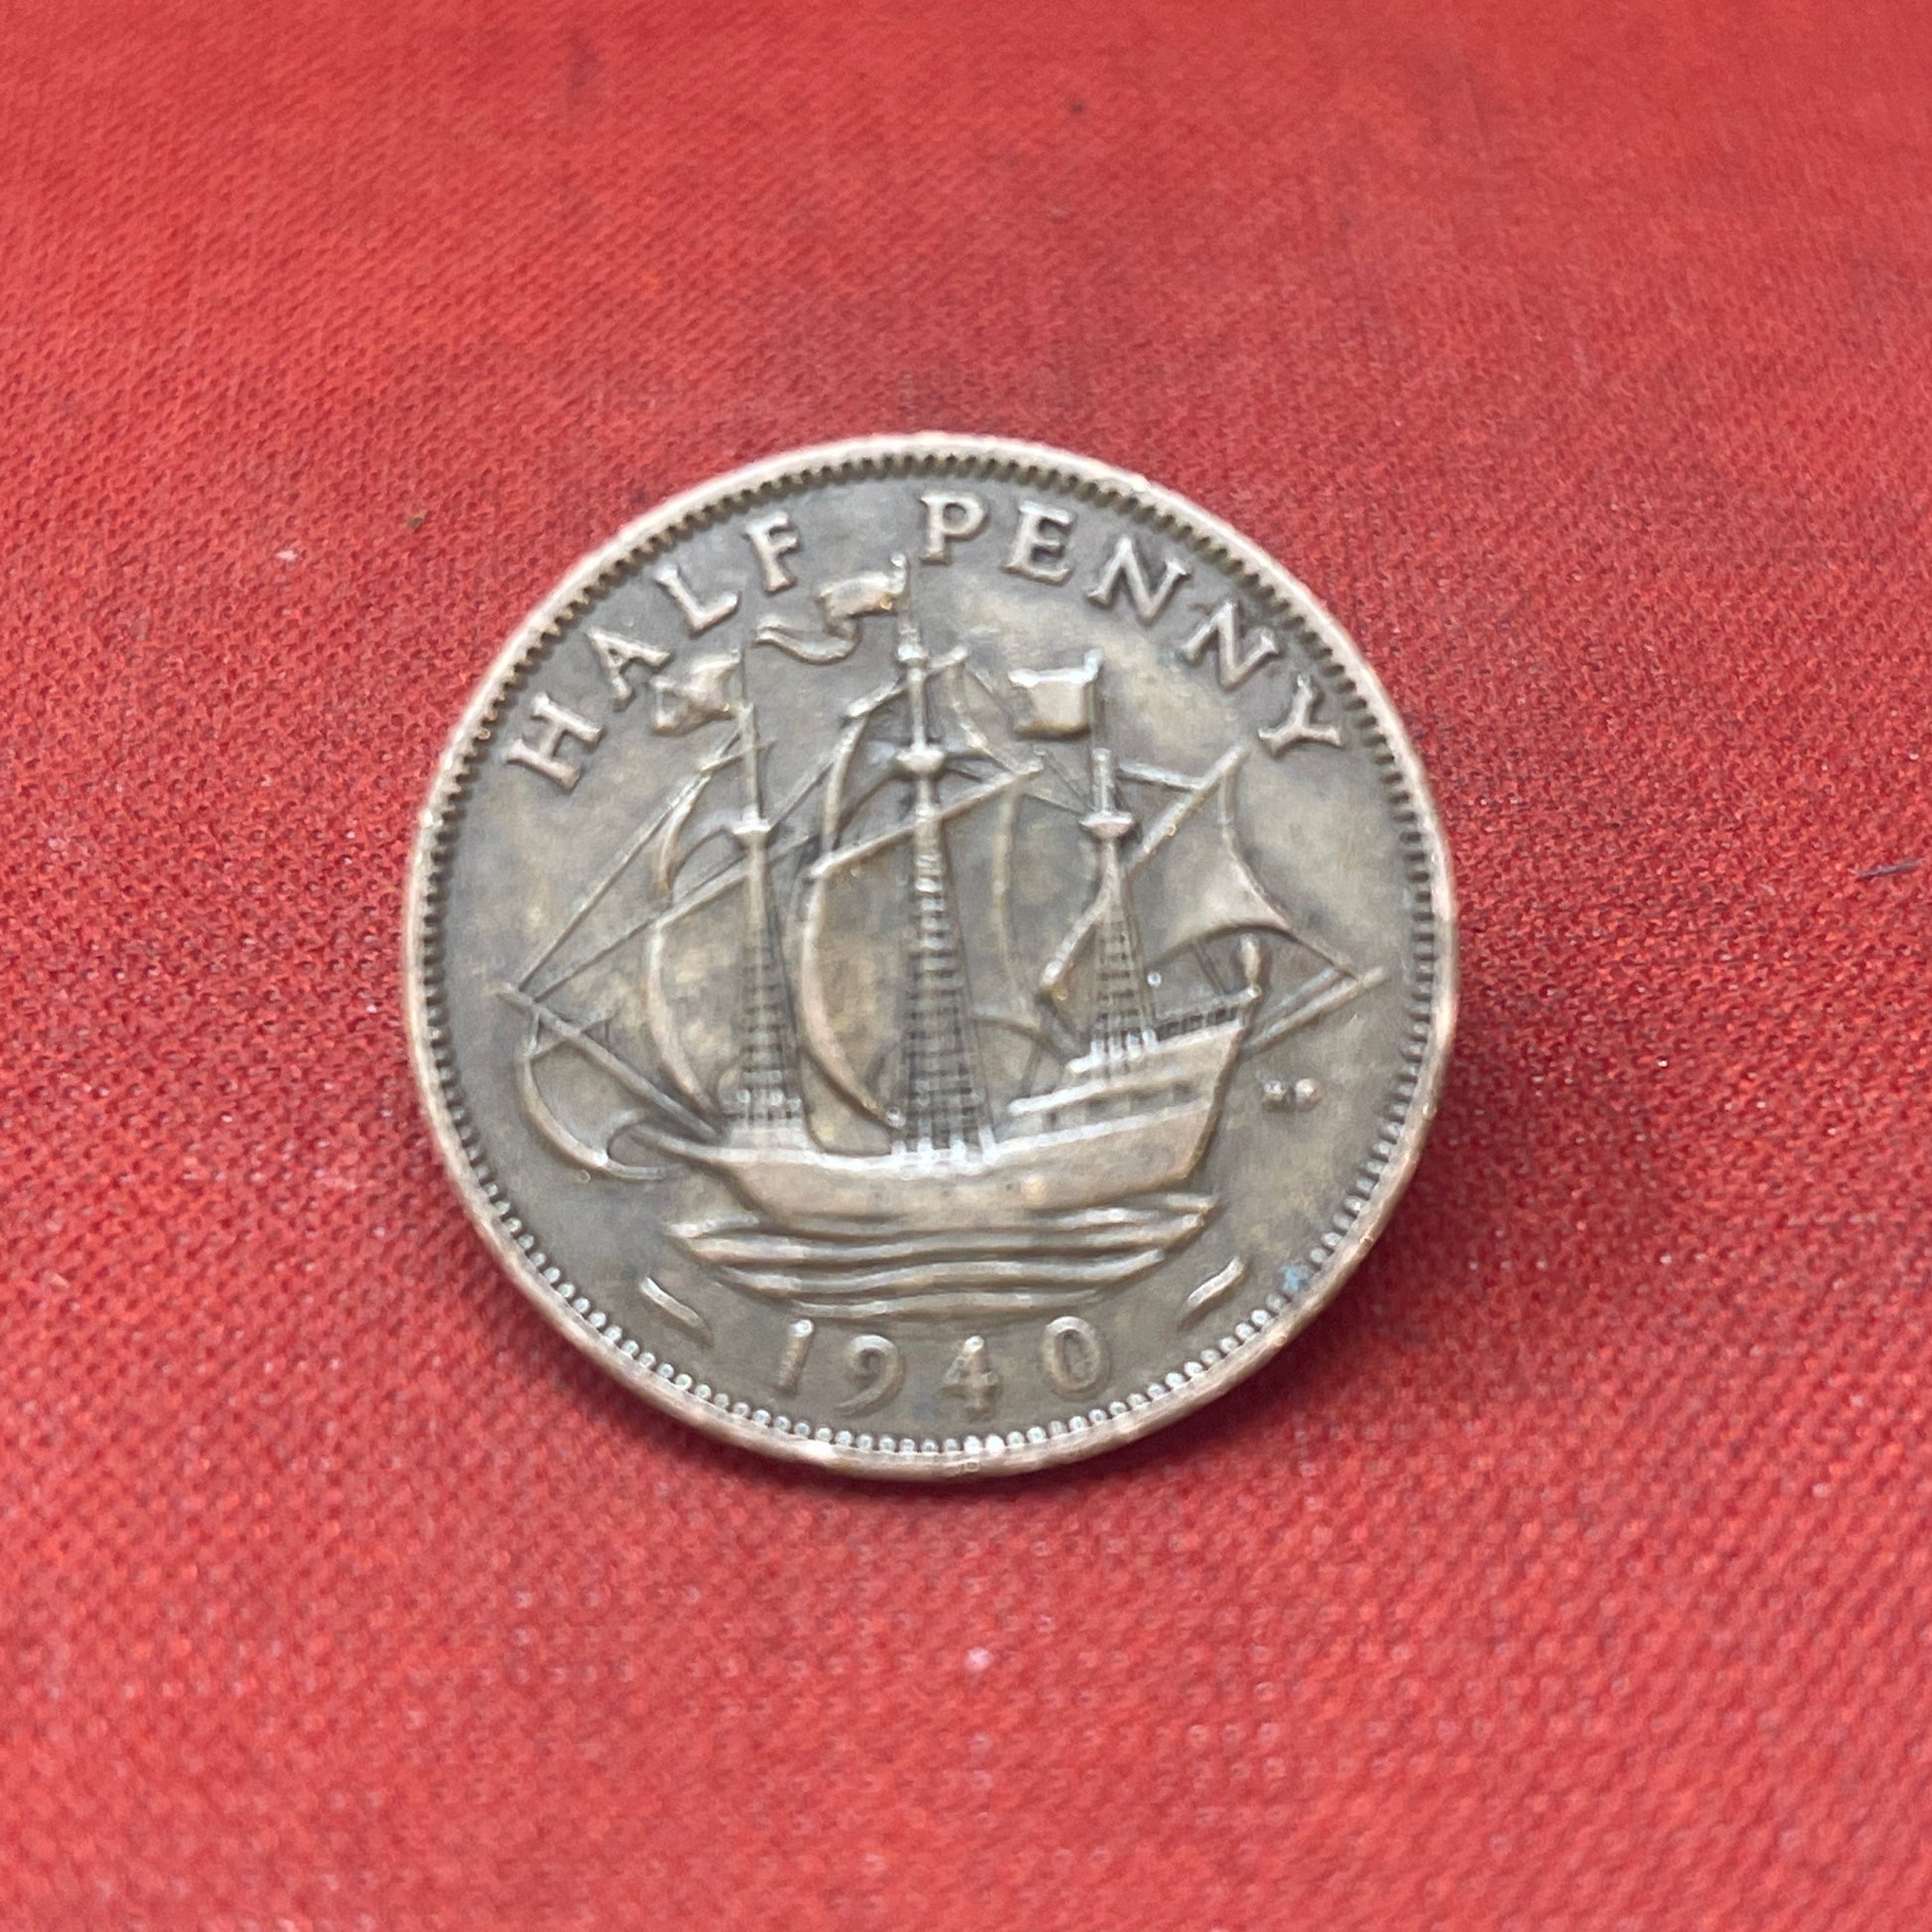 King George VI 1940 Half Penny